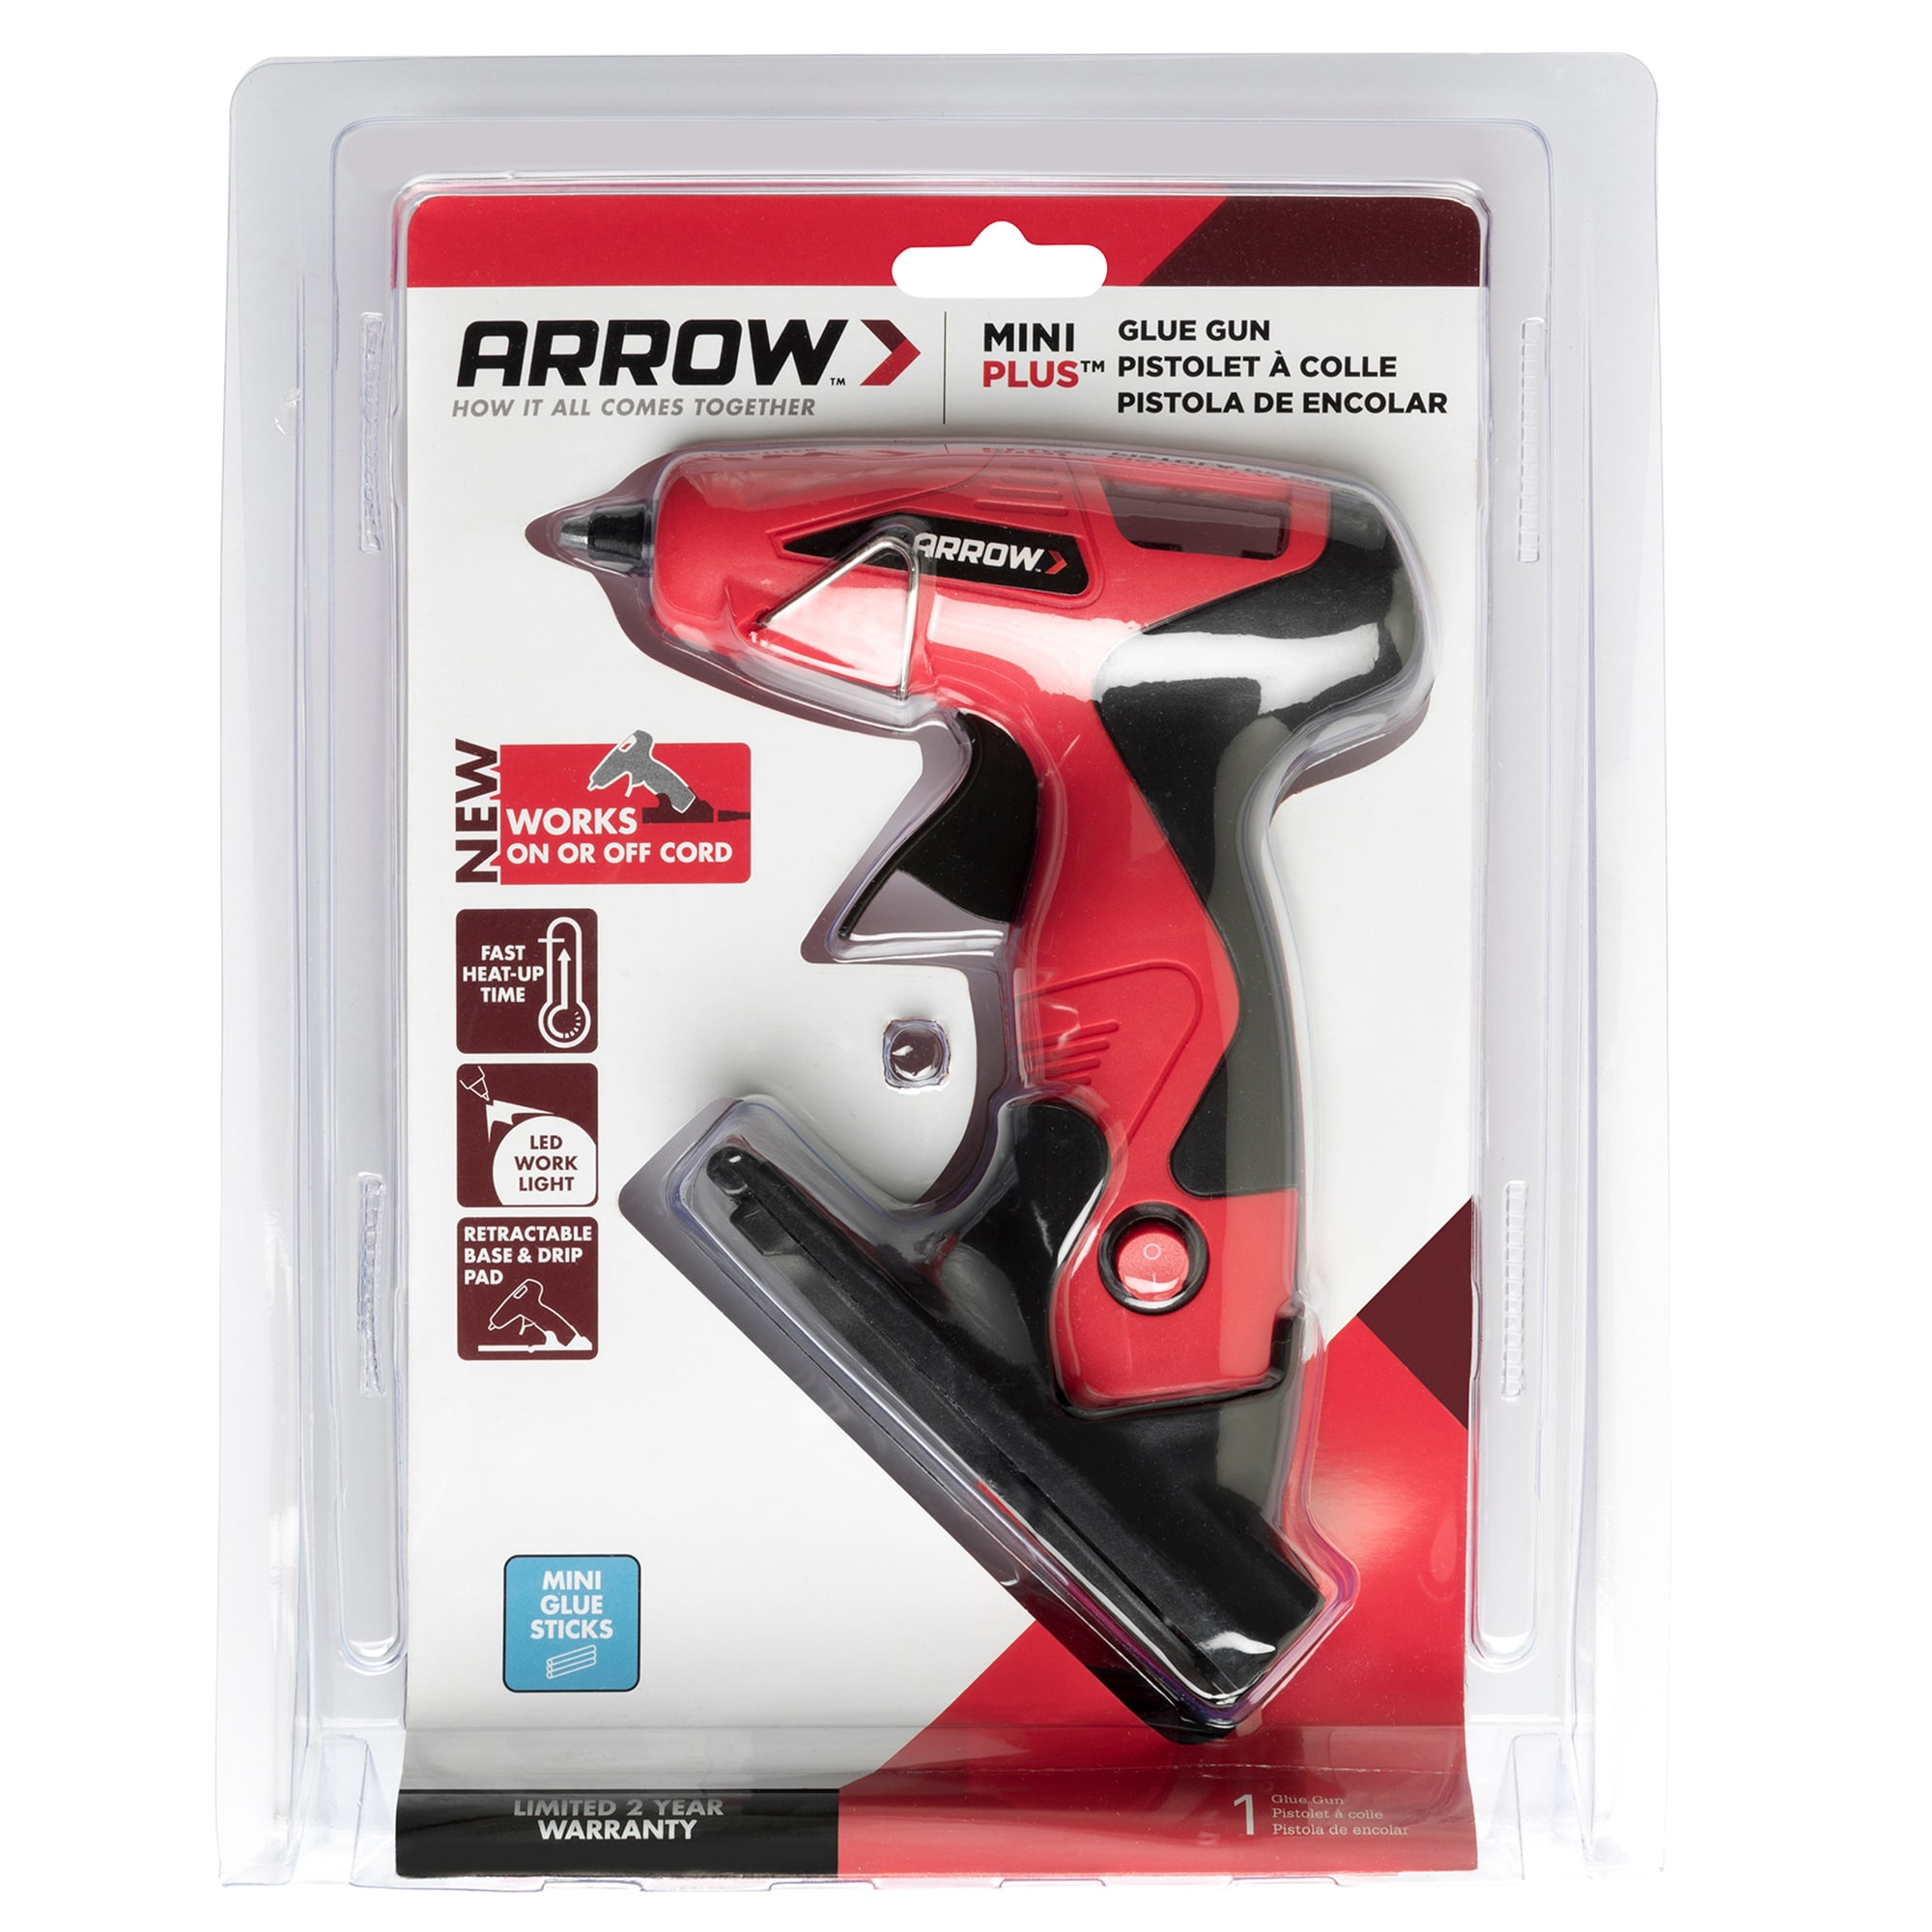 Arrow GT30LI Cordless Single Temp Glue Gun in the Glue Guns department at